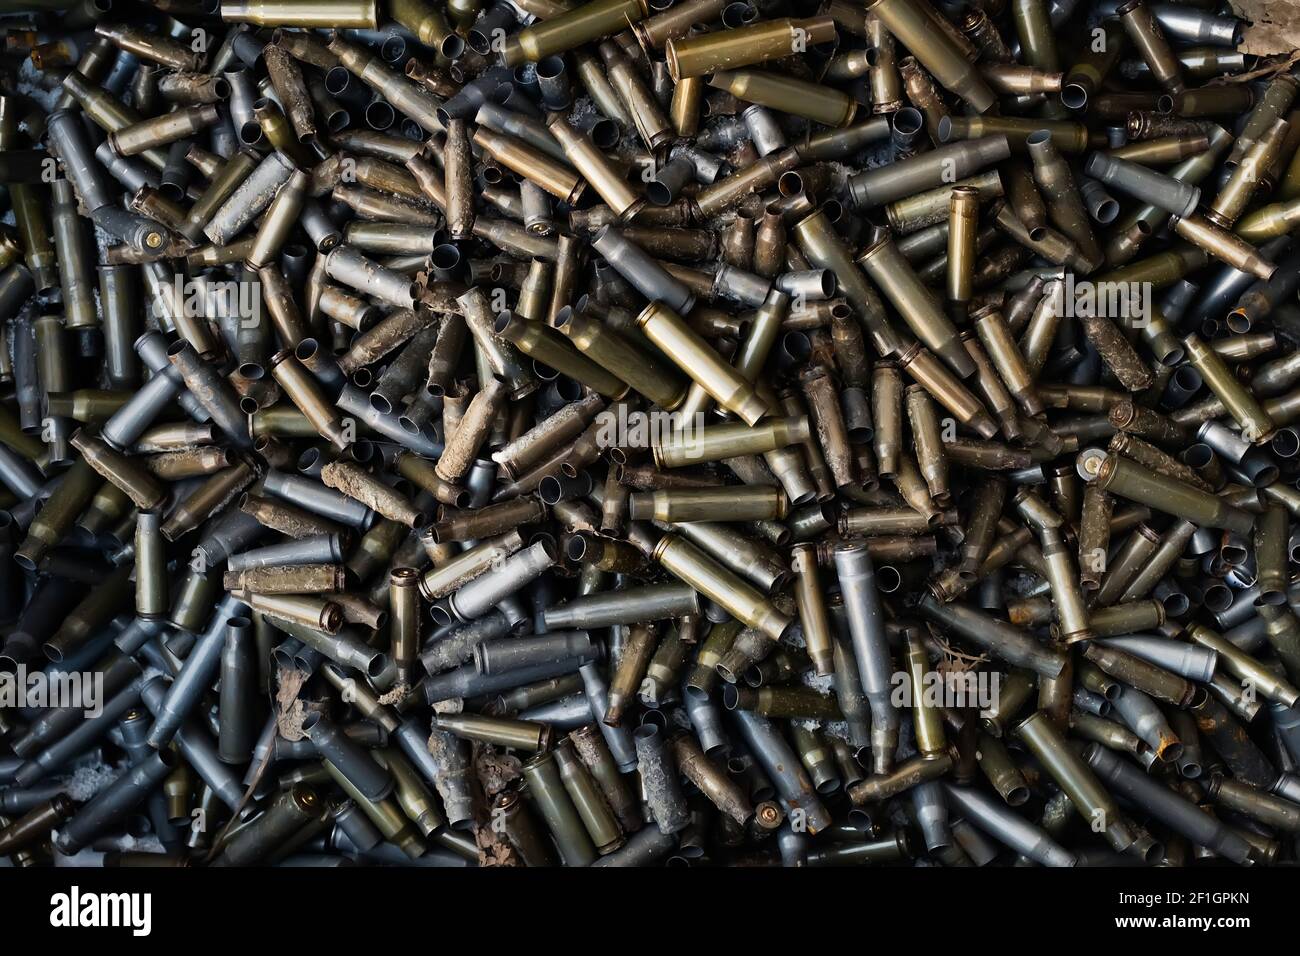 Leere Karabiner- oder Gewehrpatronen. Eine große Anzahl von Fällen. Hintergrund von Messingmunition Patronen, um bewaffnete Konflikte, Krieg oder Schüsse zu veranschaulichen. Stockfoto